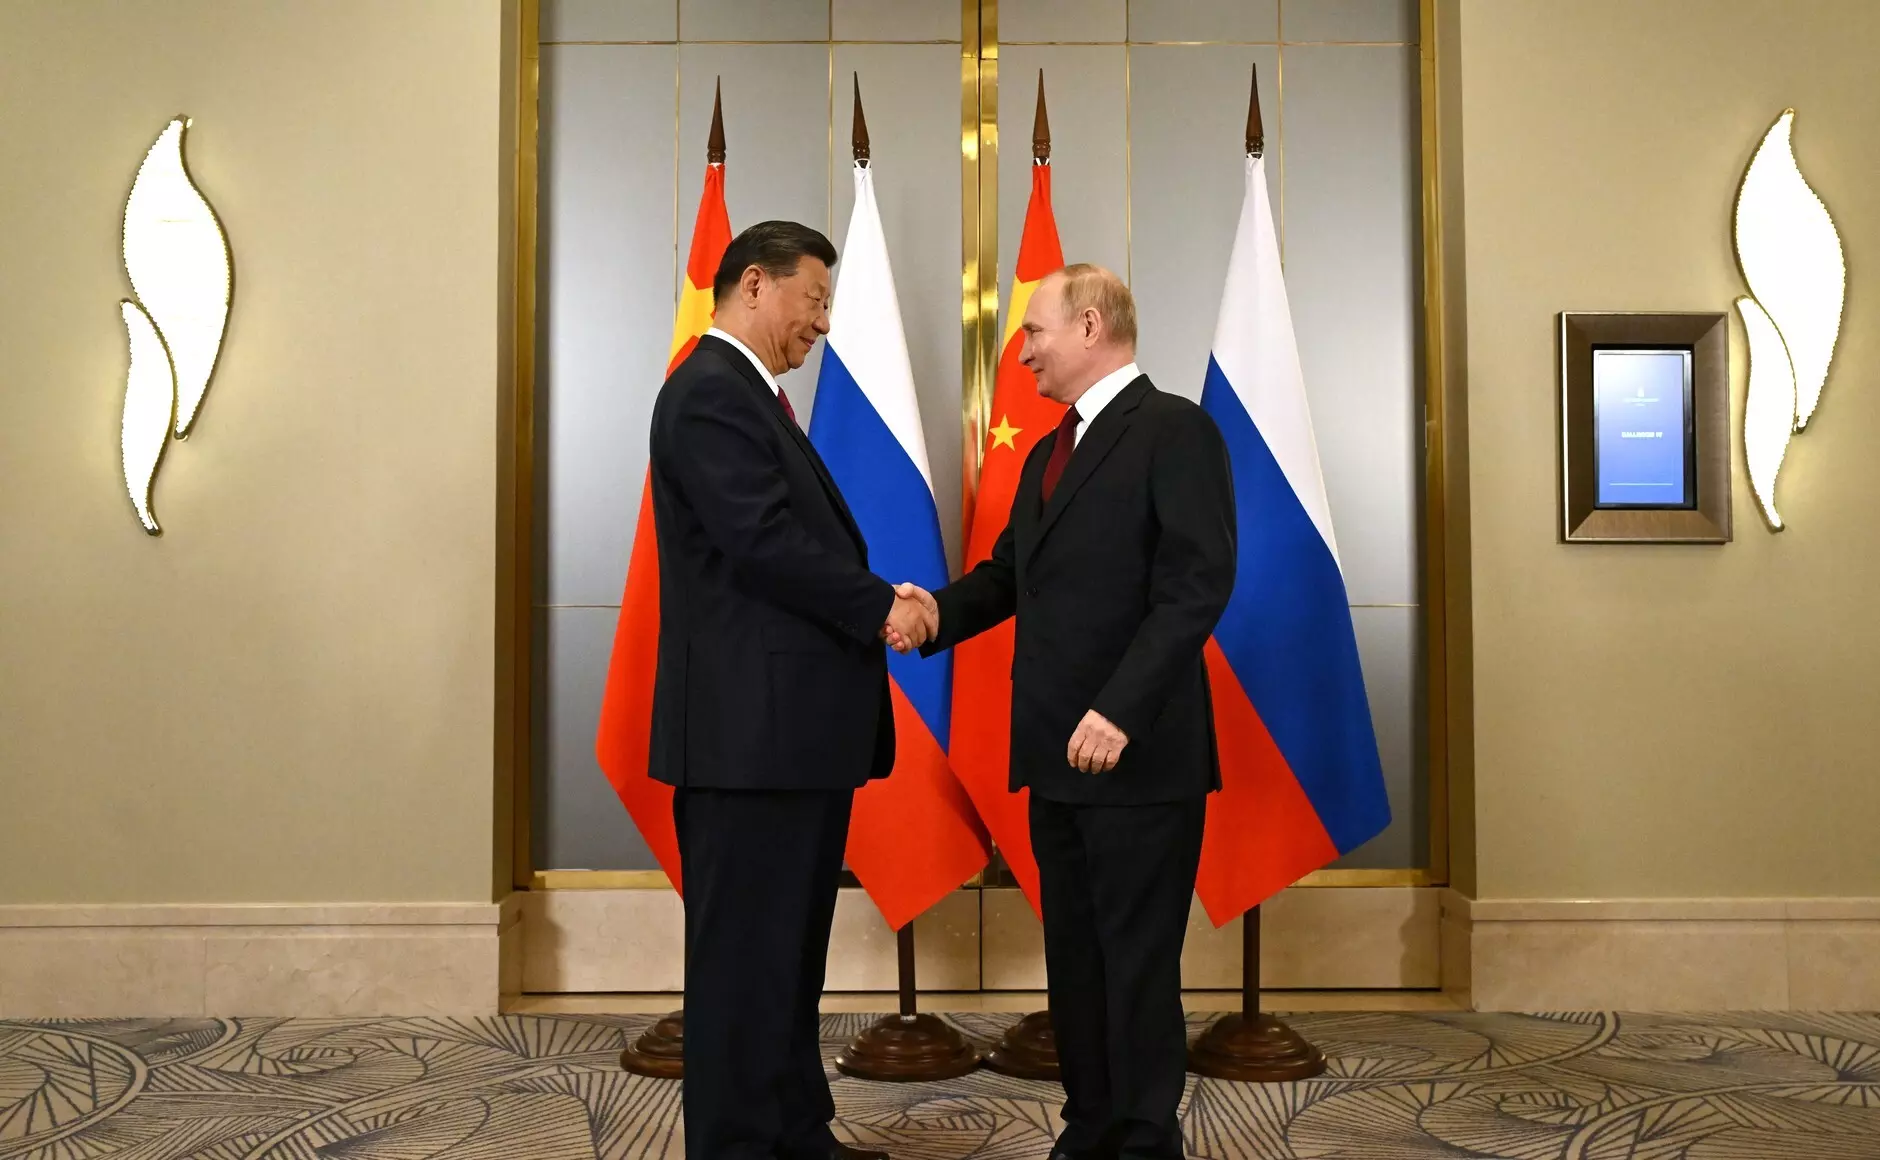 El presidente Chino, Xi Jinping, estrecha la mano del mandatario ruso, Vladimir Putin, durante su encuentro en la Organización de Cooperación de Shanghái. — Kremlin / Europa Press